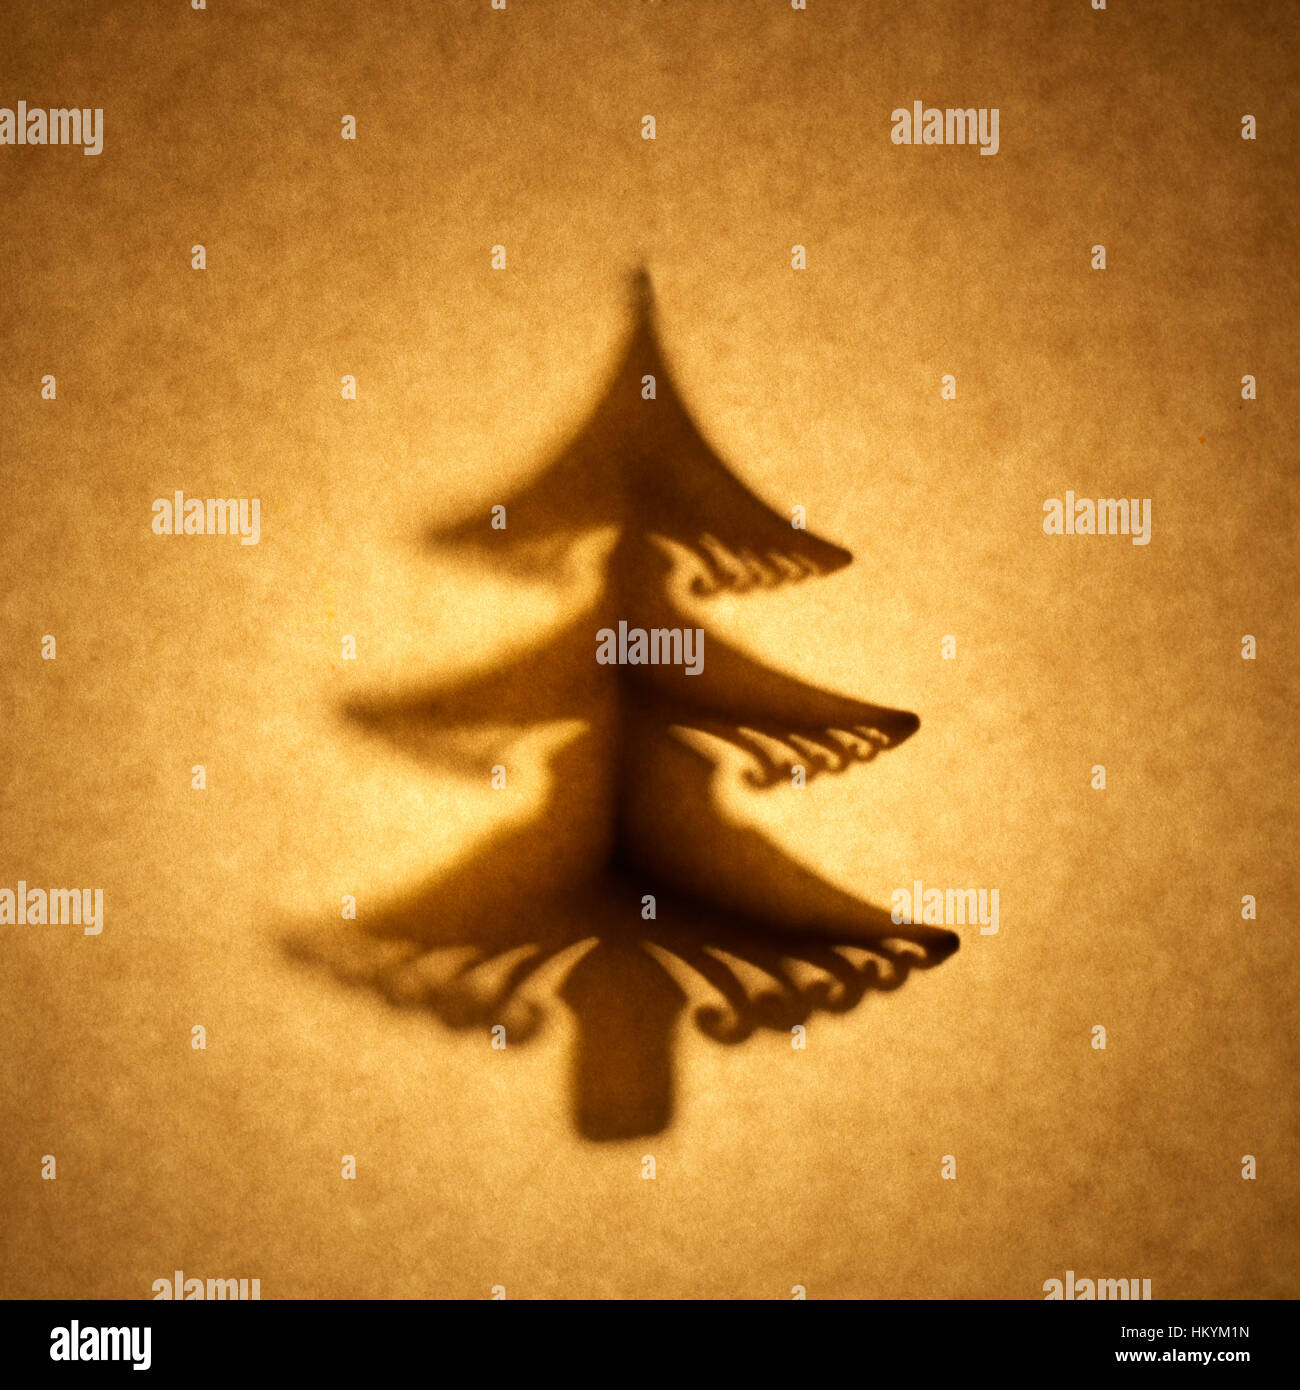 Silhouette en contre-jour de l'arbre de Noël de découpe forme contre ton brun, papier avec spot mettez en surbrillance. Banque D'Images